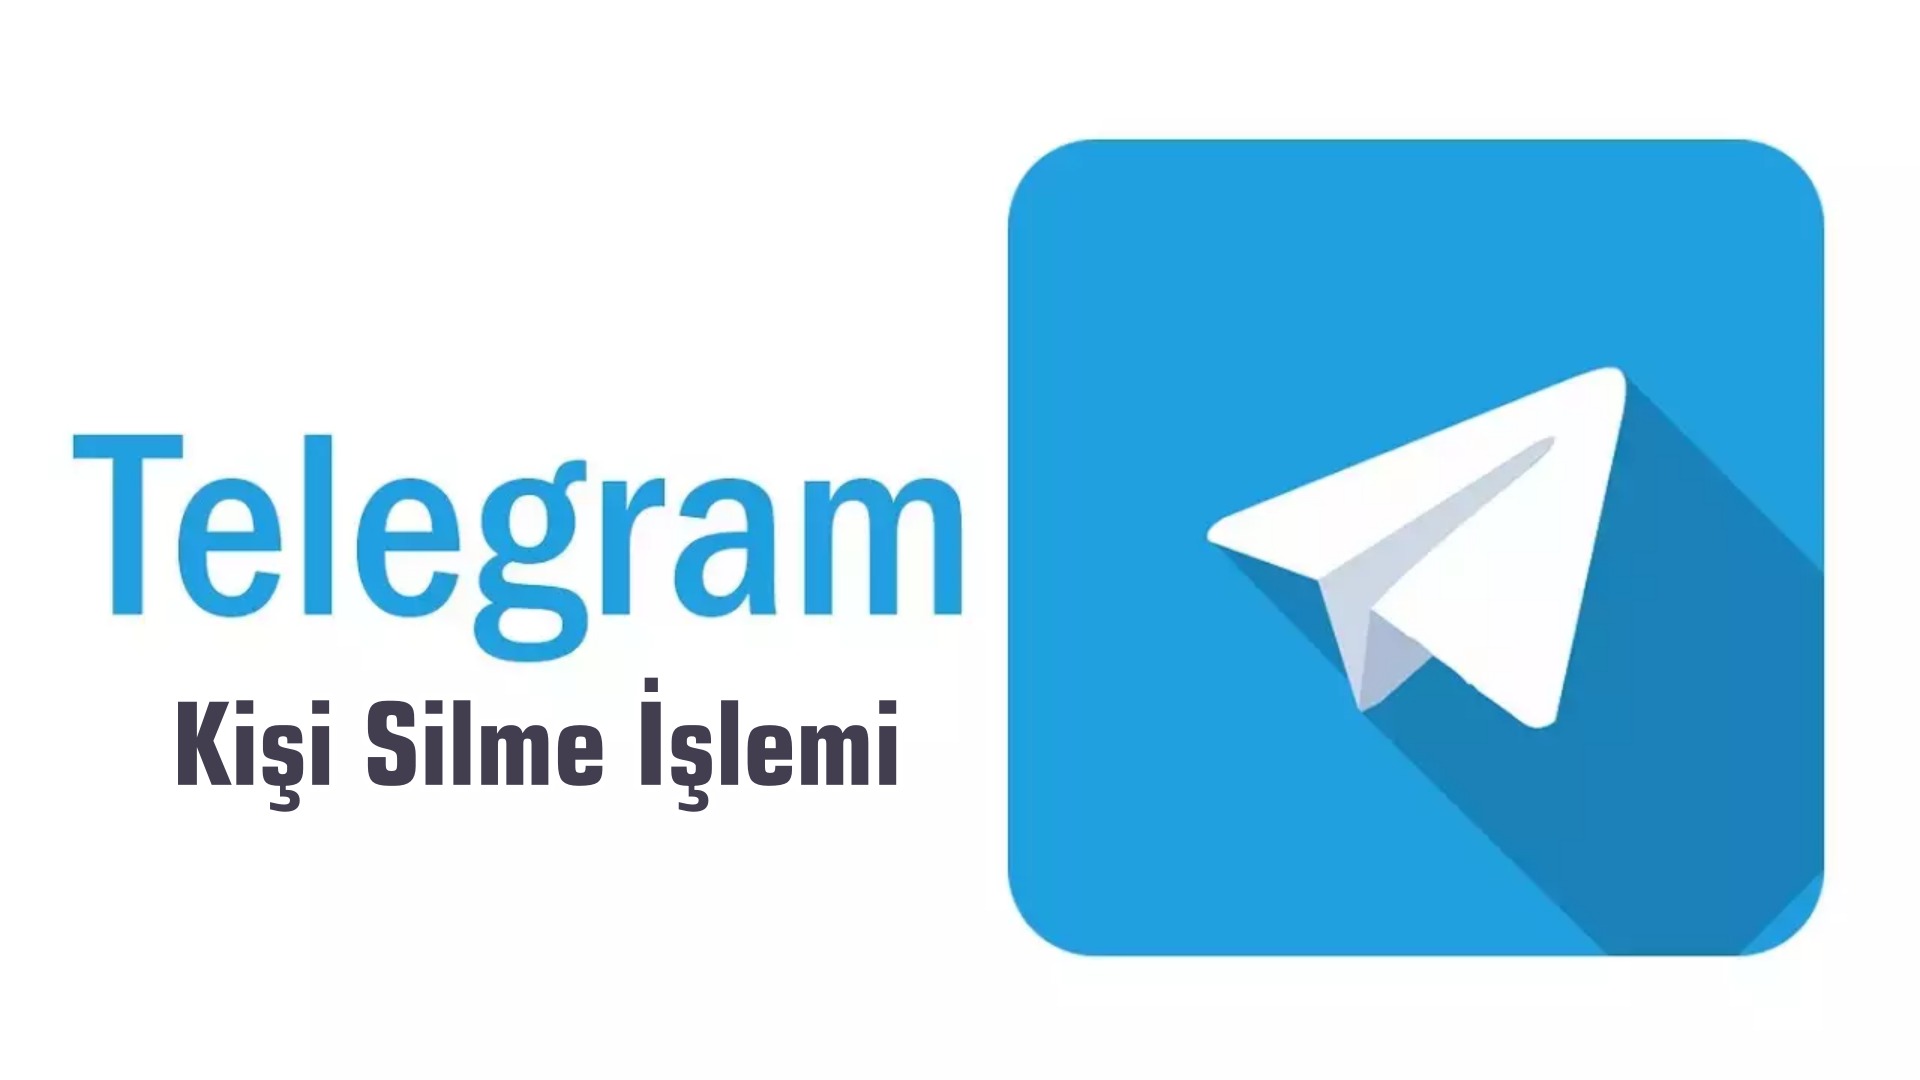 telegram-kisi-silme.jpg